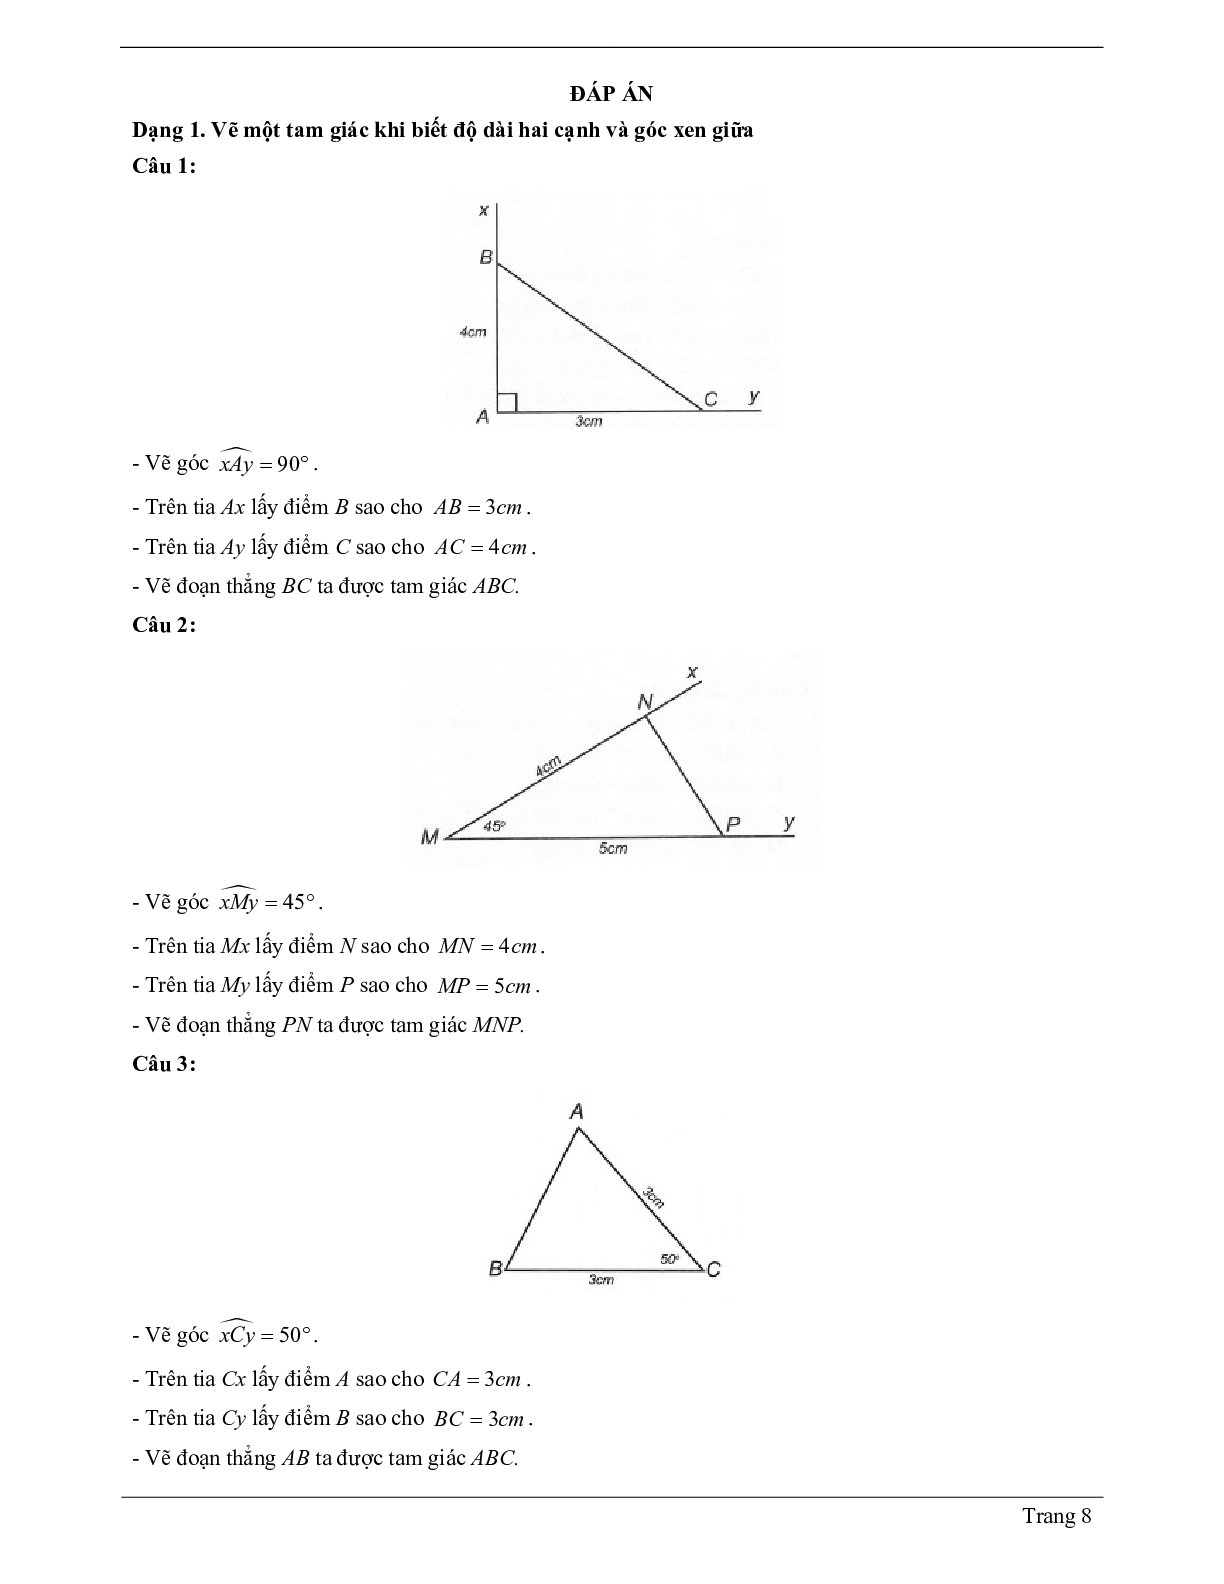 Lý thuyết Toán lớp 7 có đáp án: Trường hợp bằng nhau thứ hai của tam giác: cạnh - góc - cạnh (c.g.c) (trang 8)